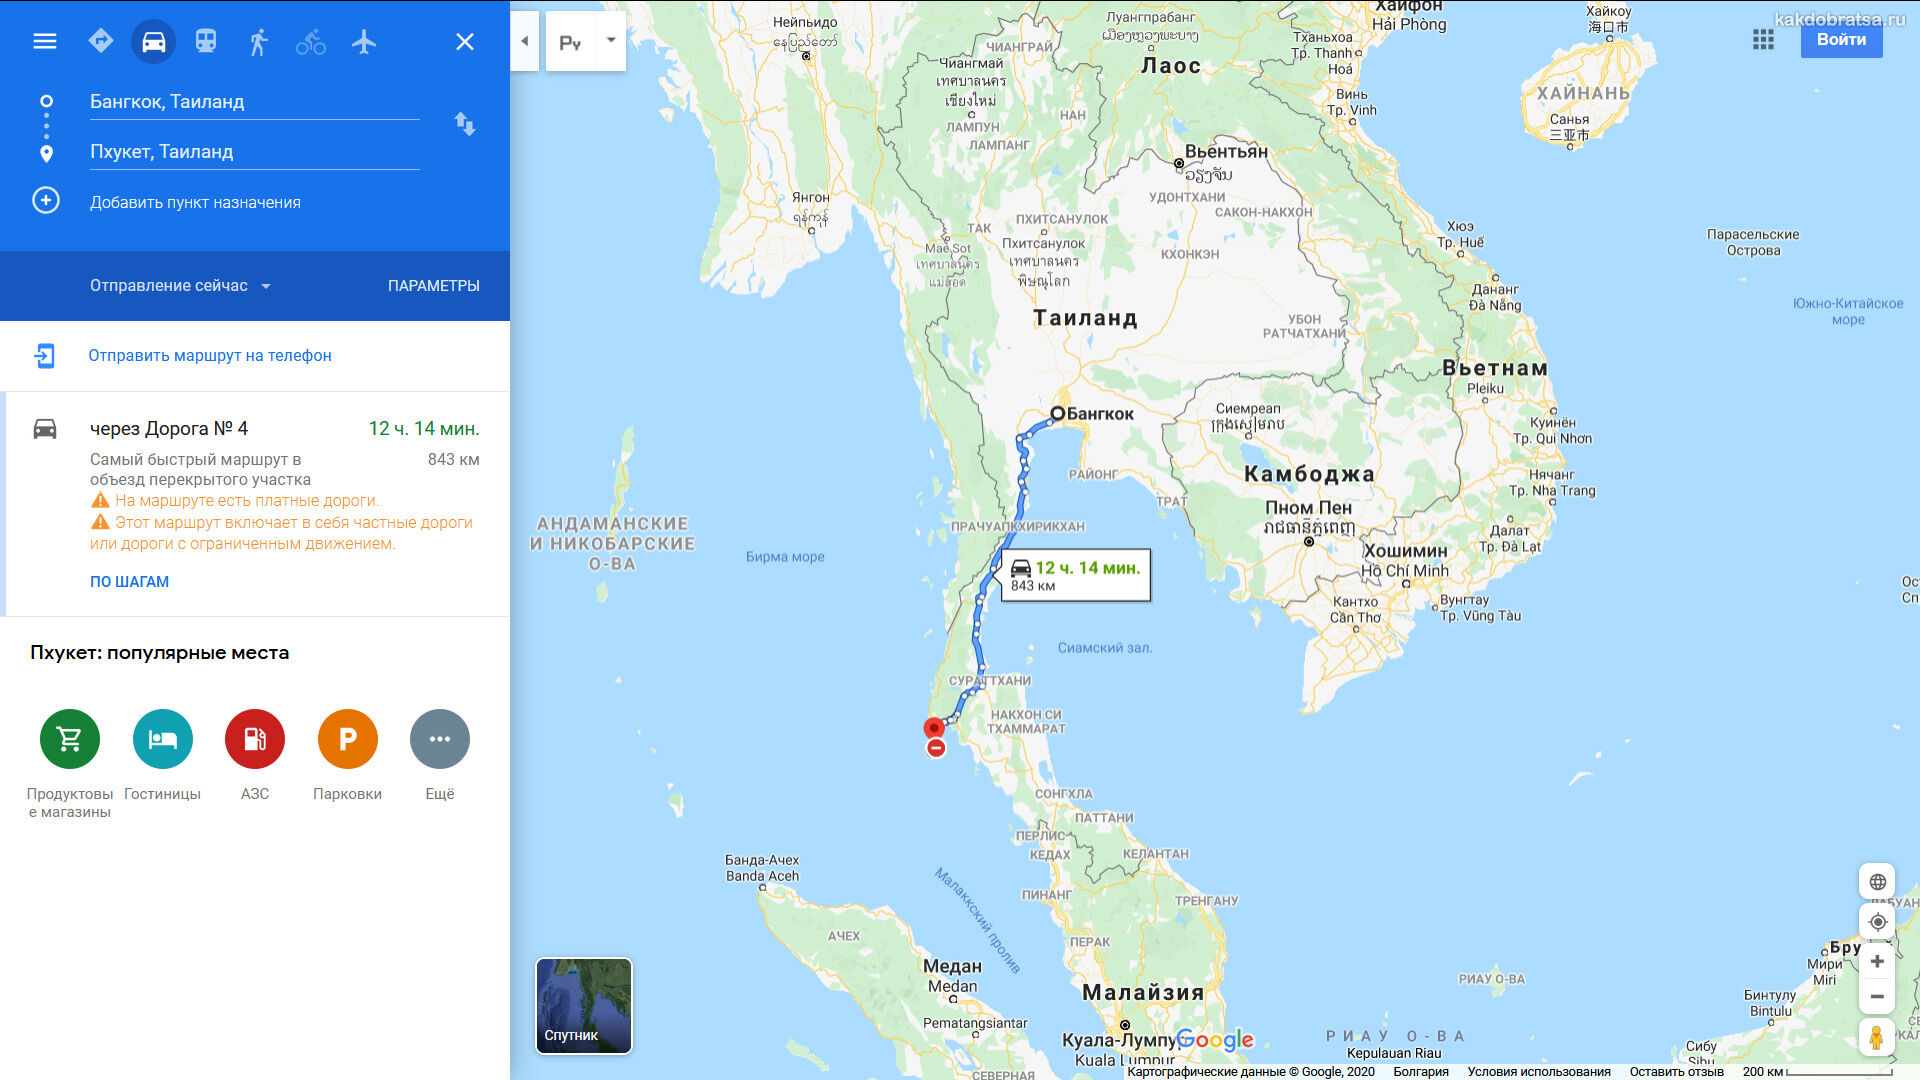 Бангкок Пхукет расстояние, время в пути и карта